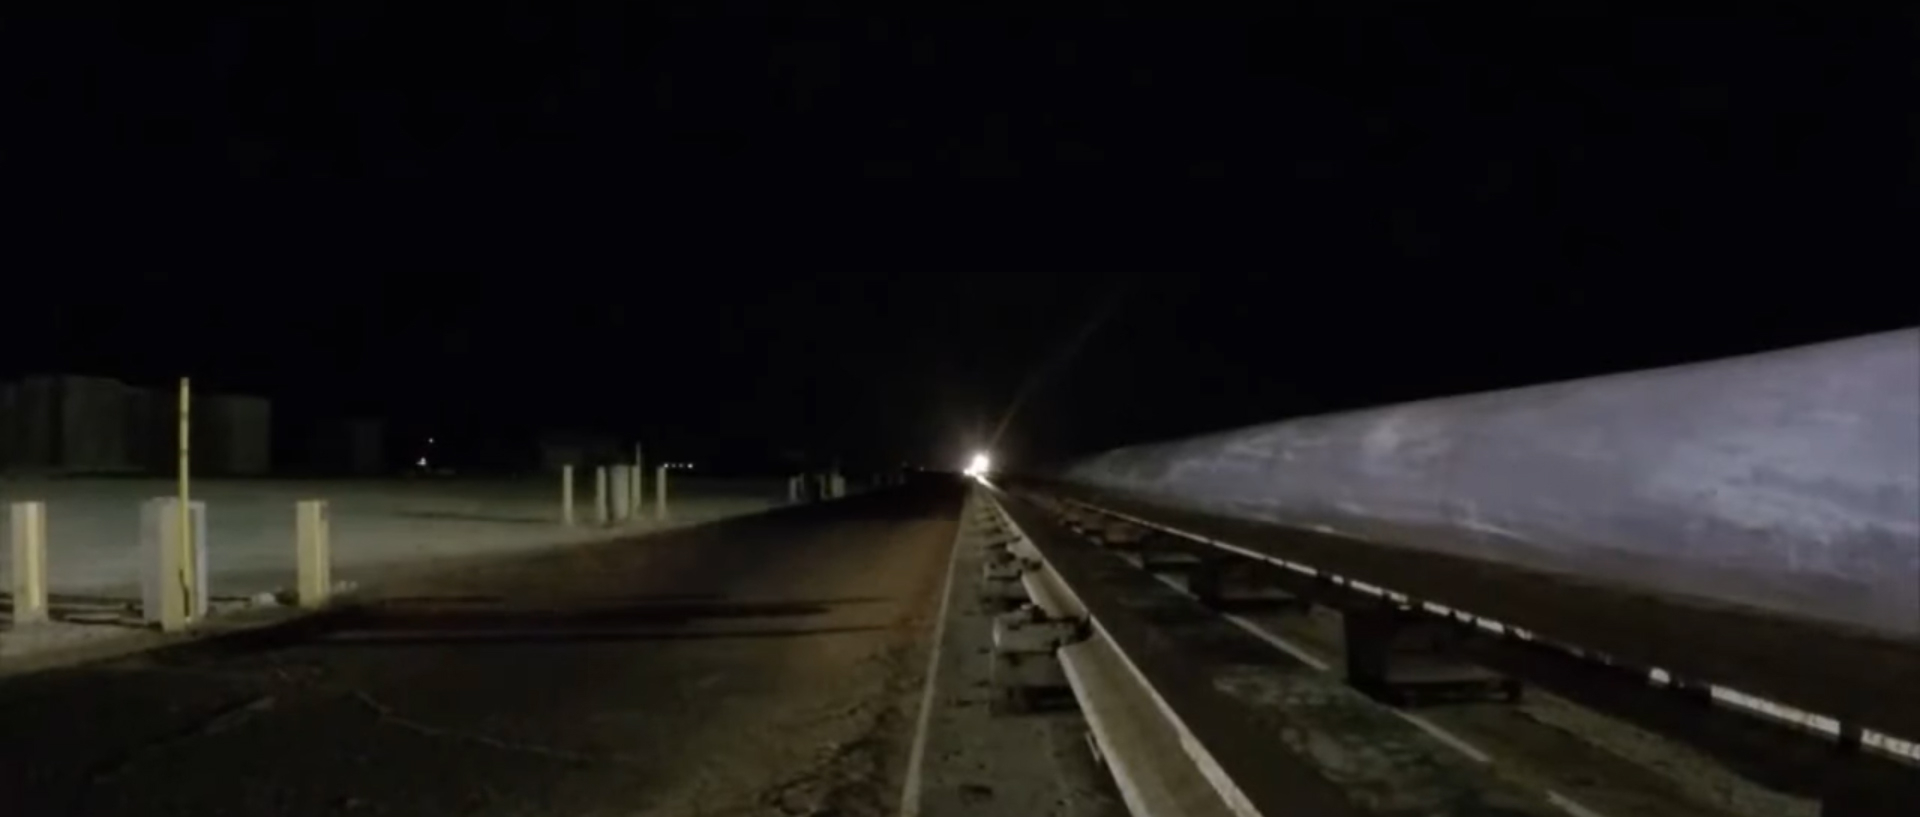 Американские военные разогнали гиперзвуковые сани до 10 620 км/ч (разрывное видео)